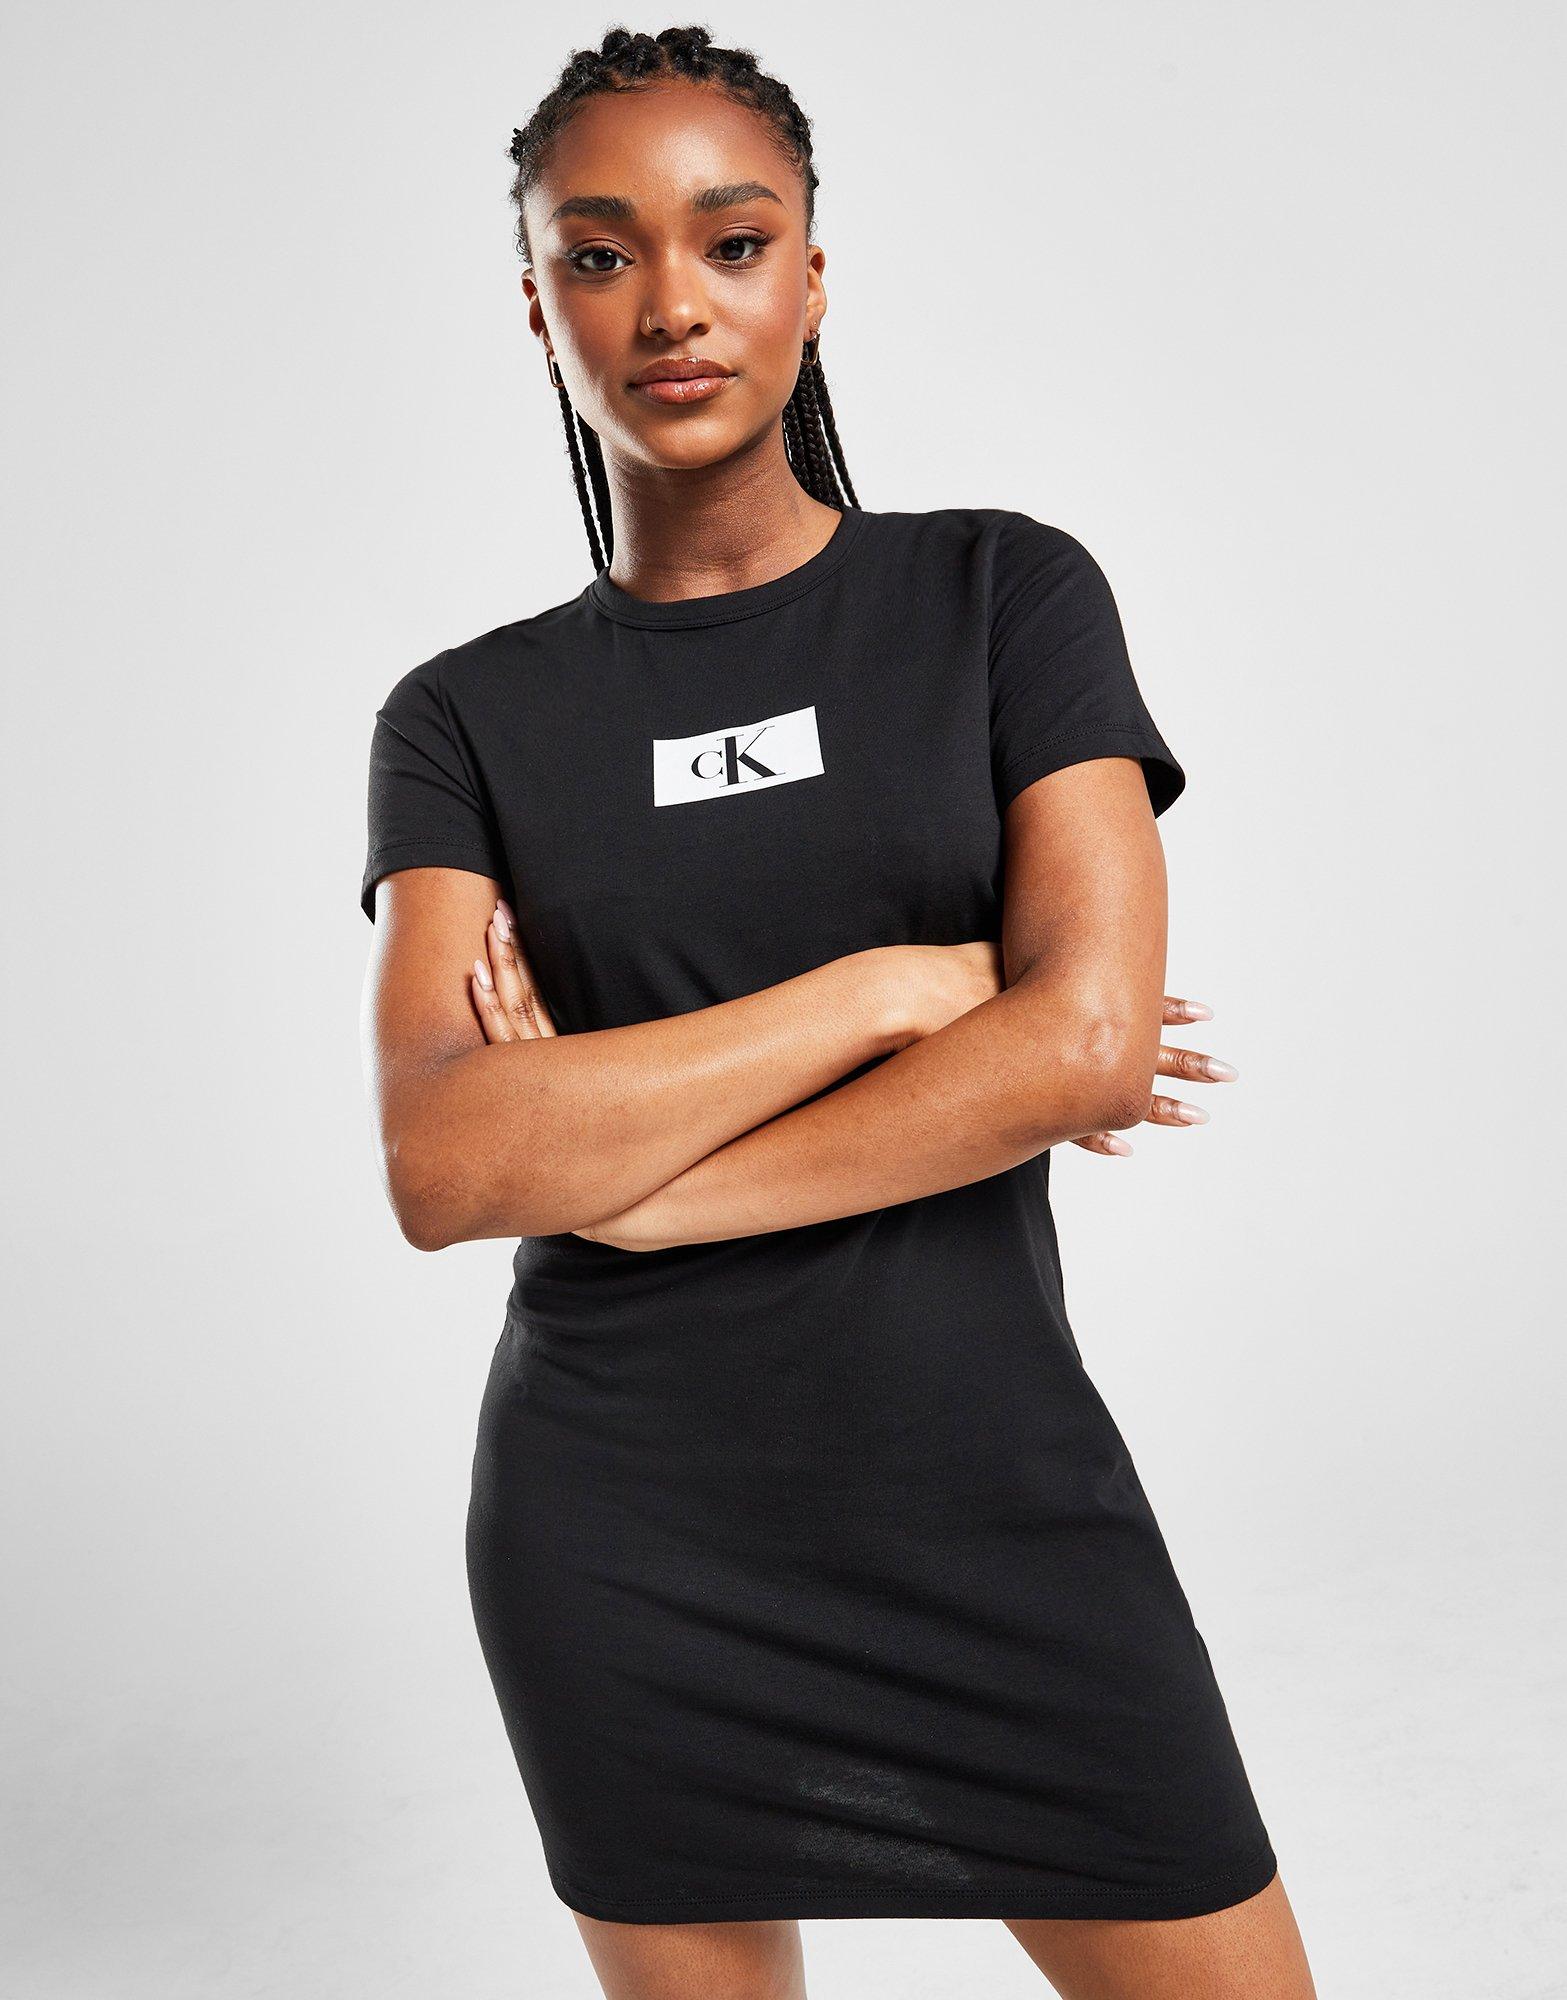 Black Calvin Klein CK96 T-Shirt Dress